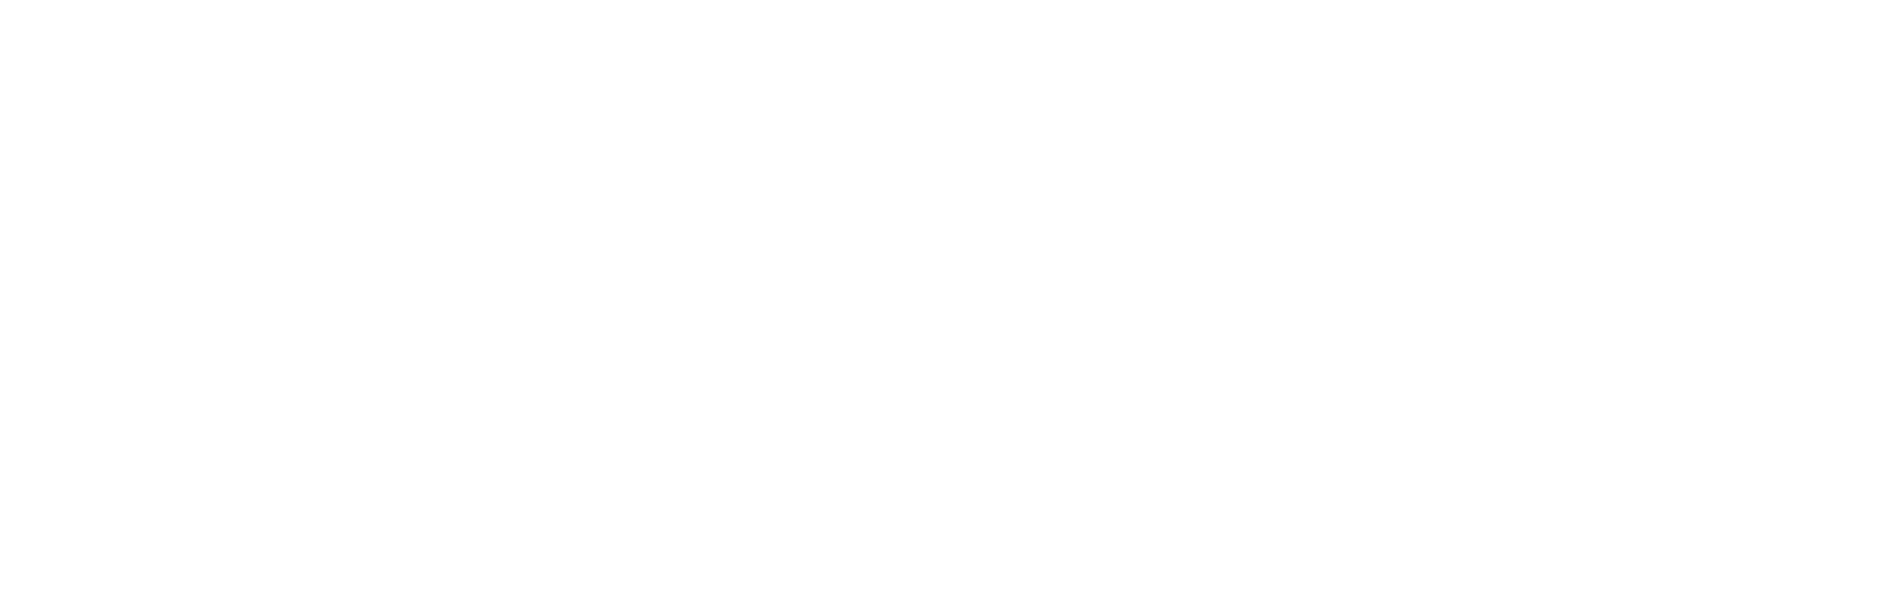 Zummacro - World Commerce